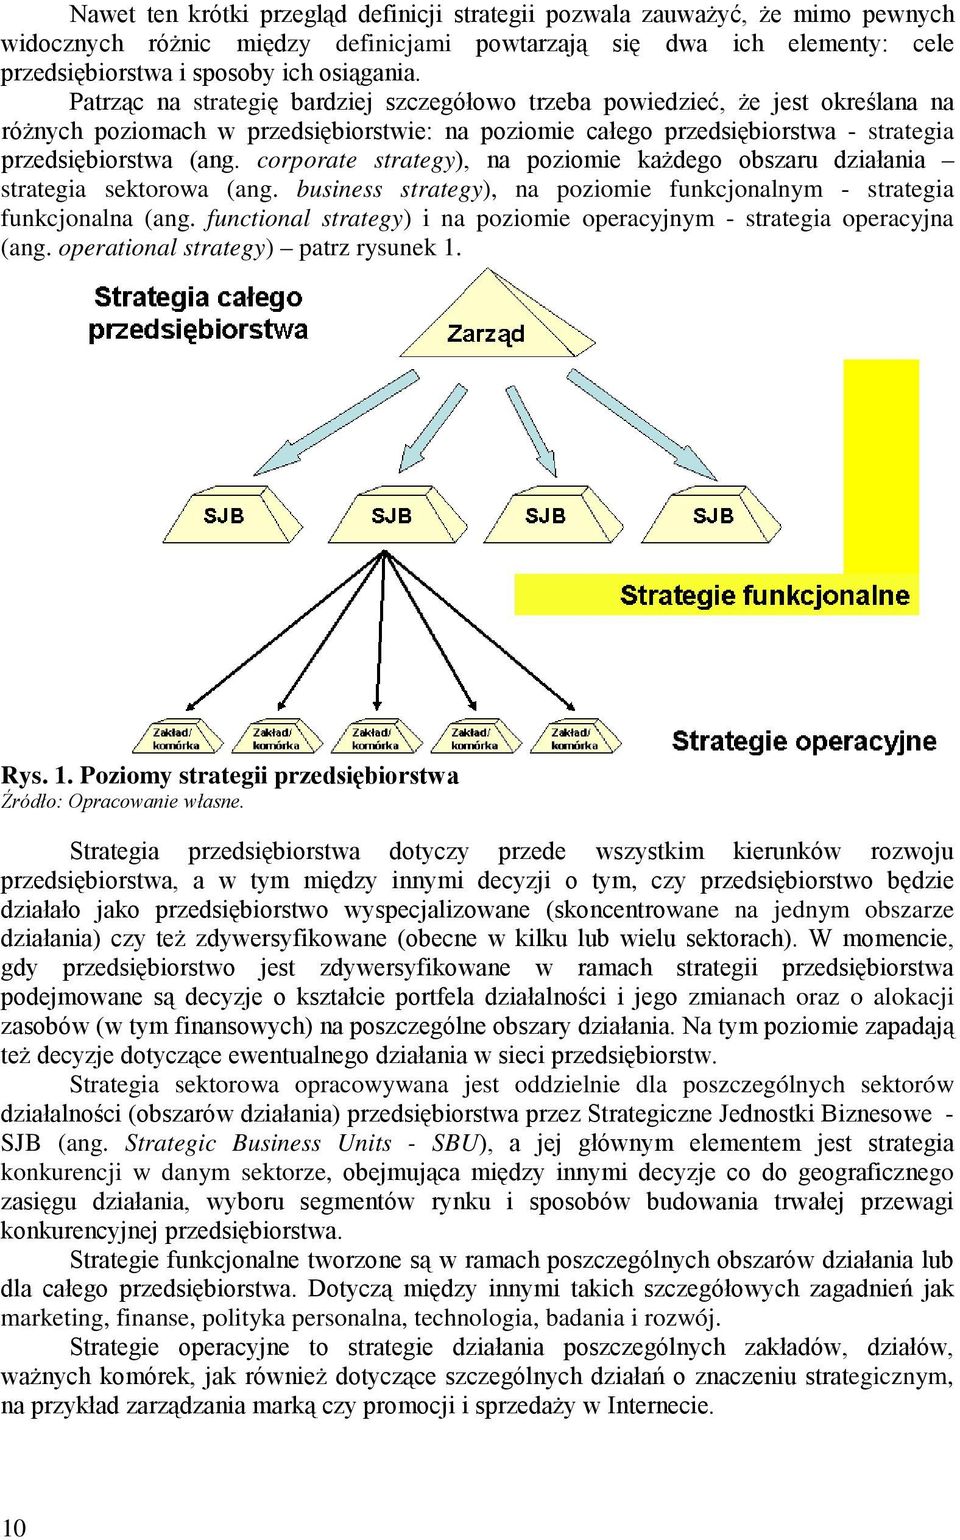 corporate strategy), na poziomie każdego obszaru działania strategia sektorowa (ang. business strategy), na poziomie funkcjonalnym - strategia funkcjonalna (ang.